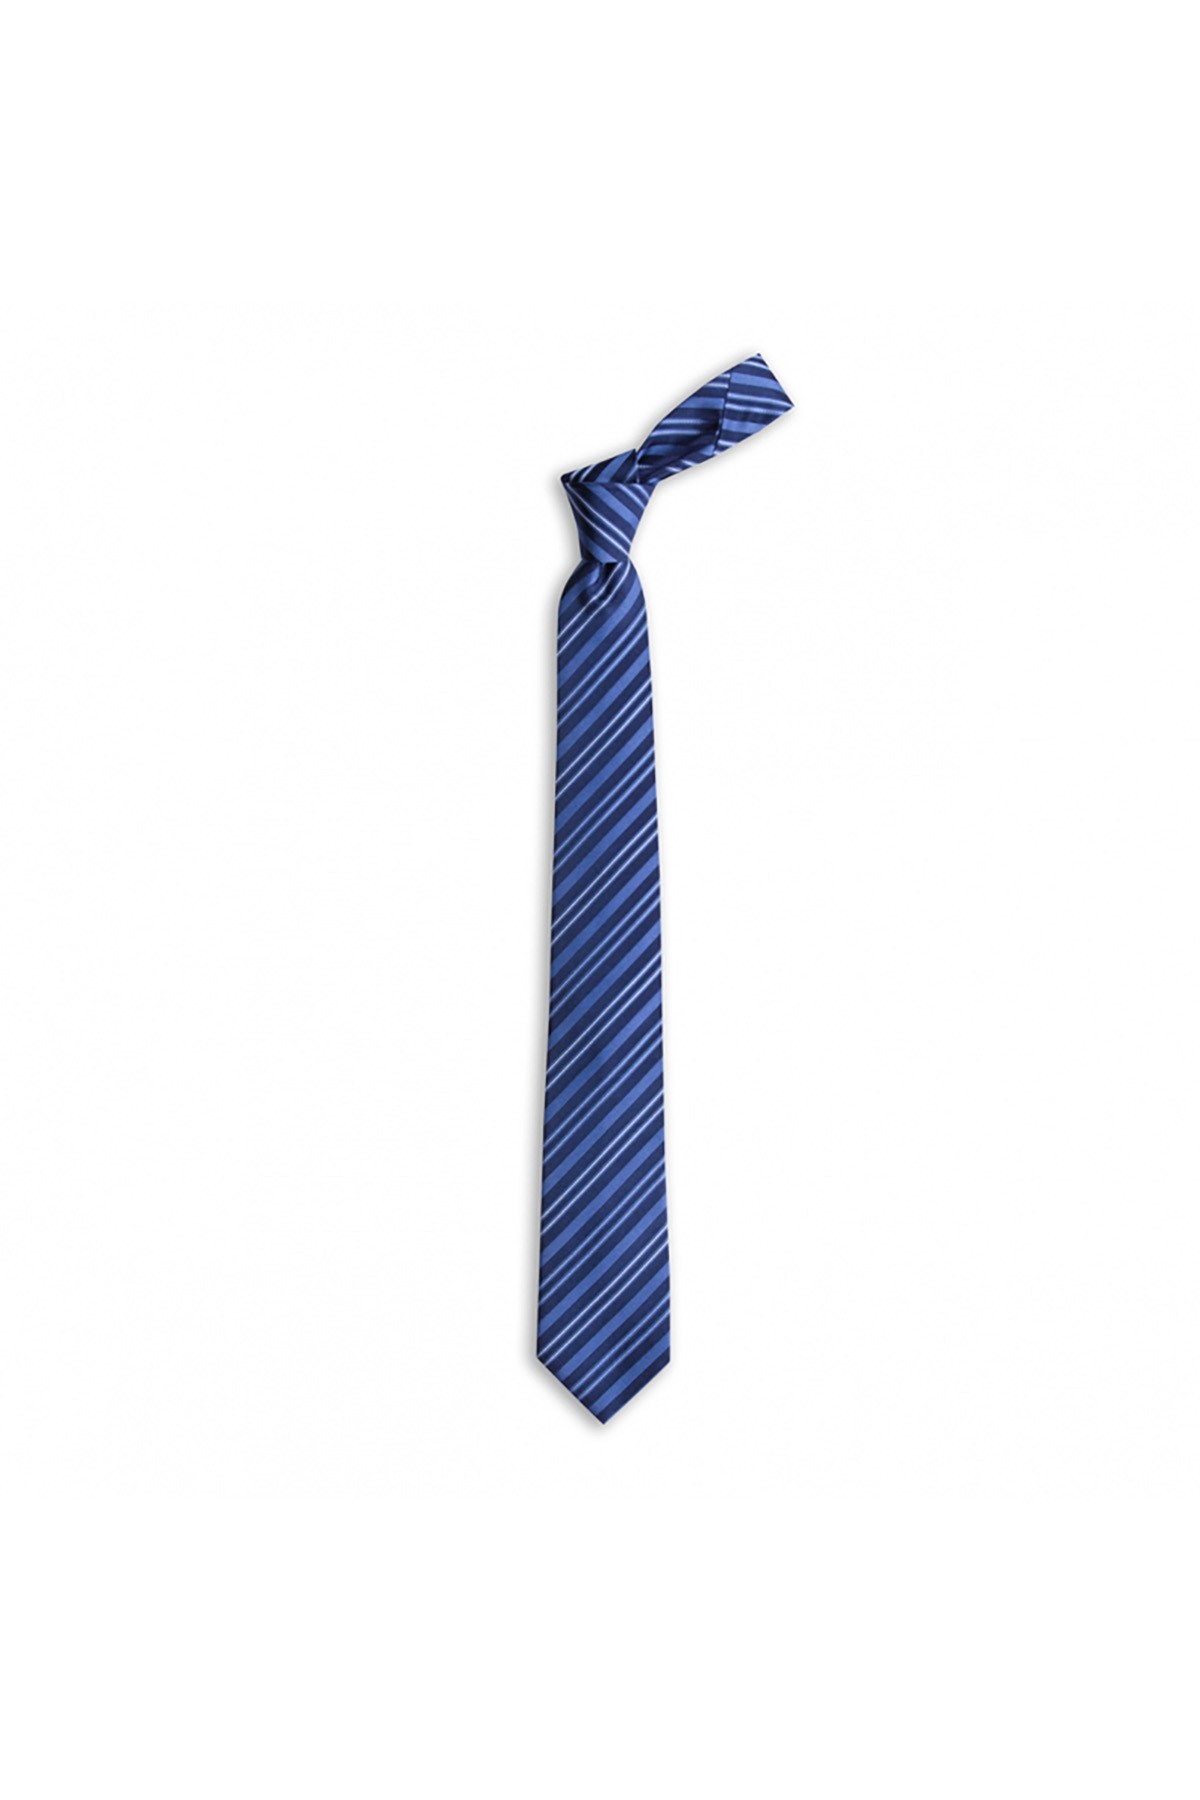 Çok çizgili 7,5 cm genişliğinde ipek kravat